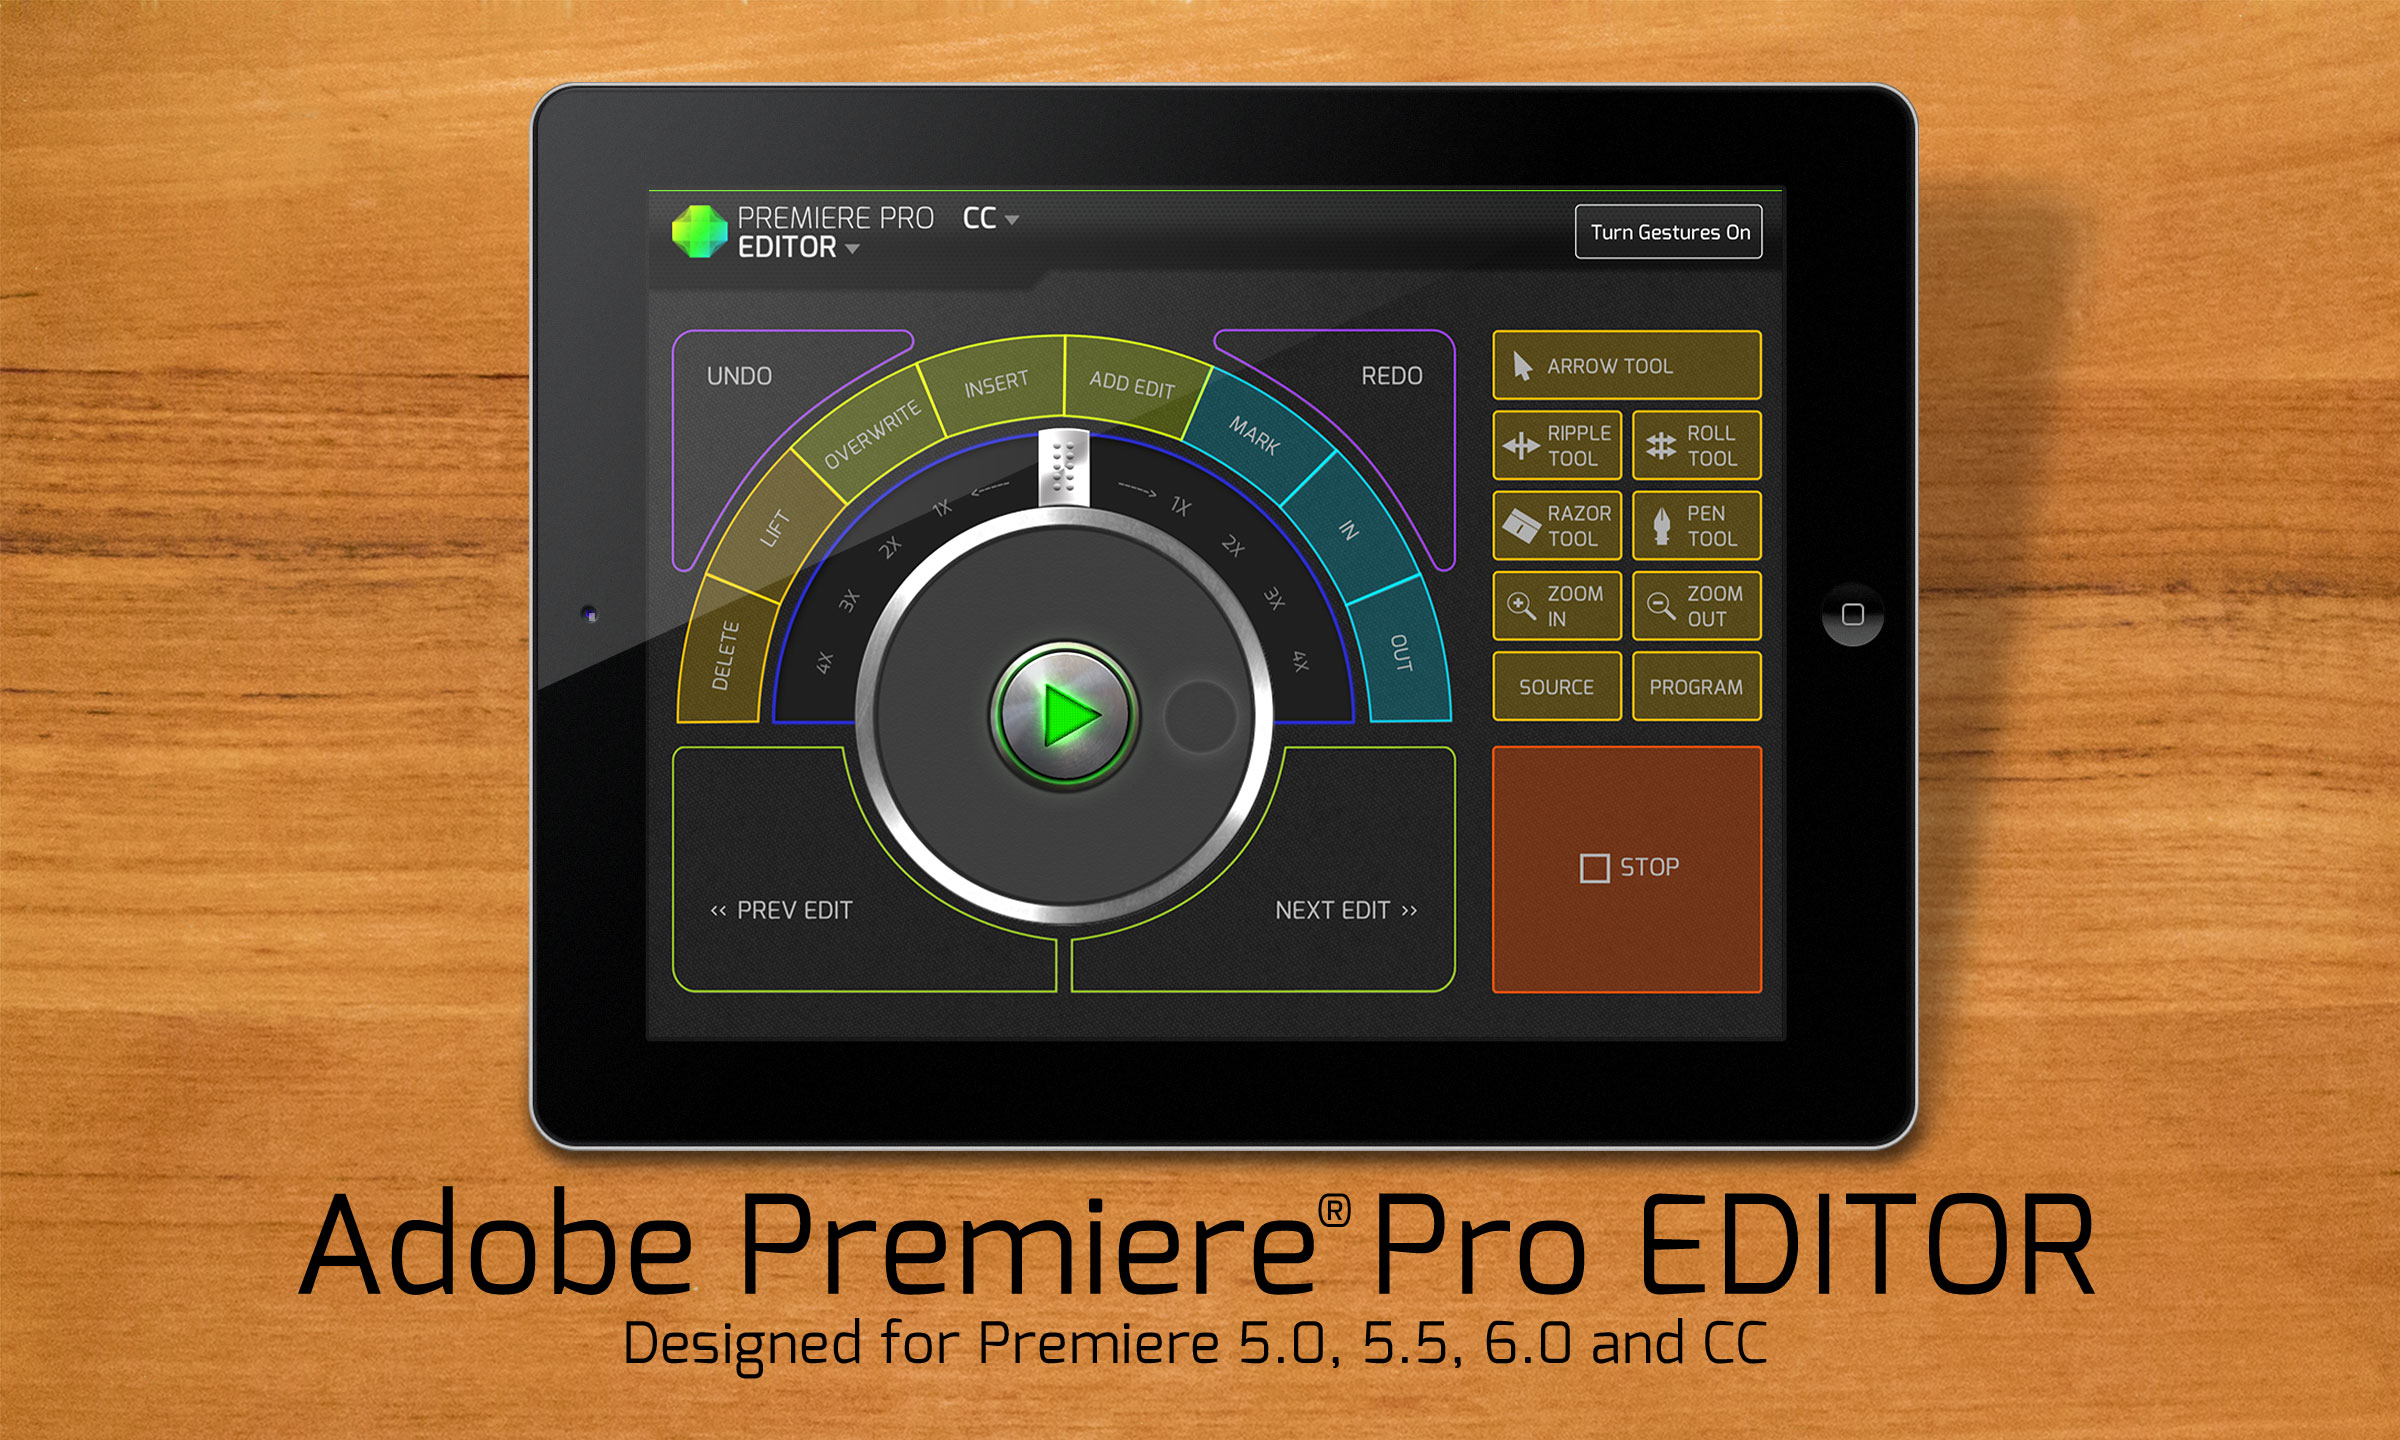 Console: Adobe Premiere Pro EDITOR